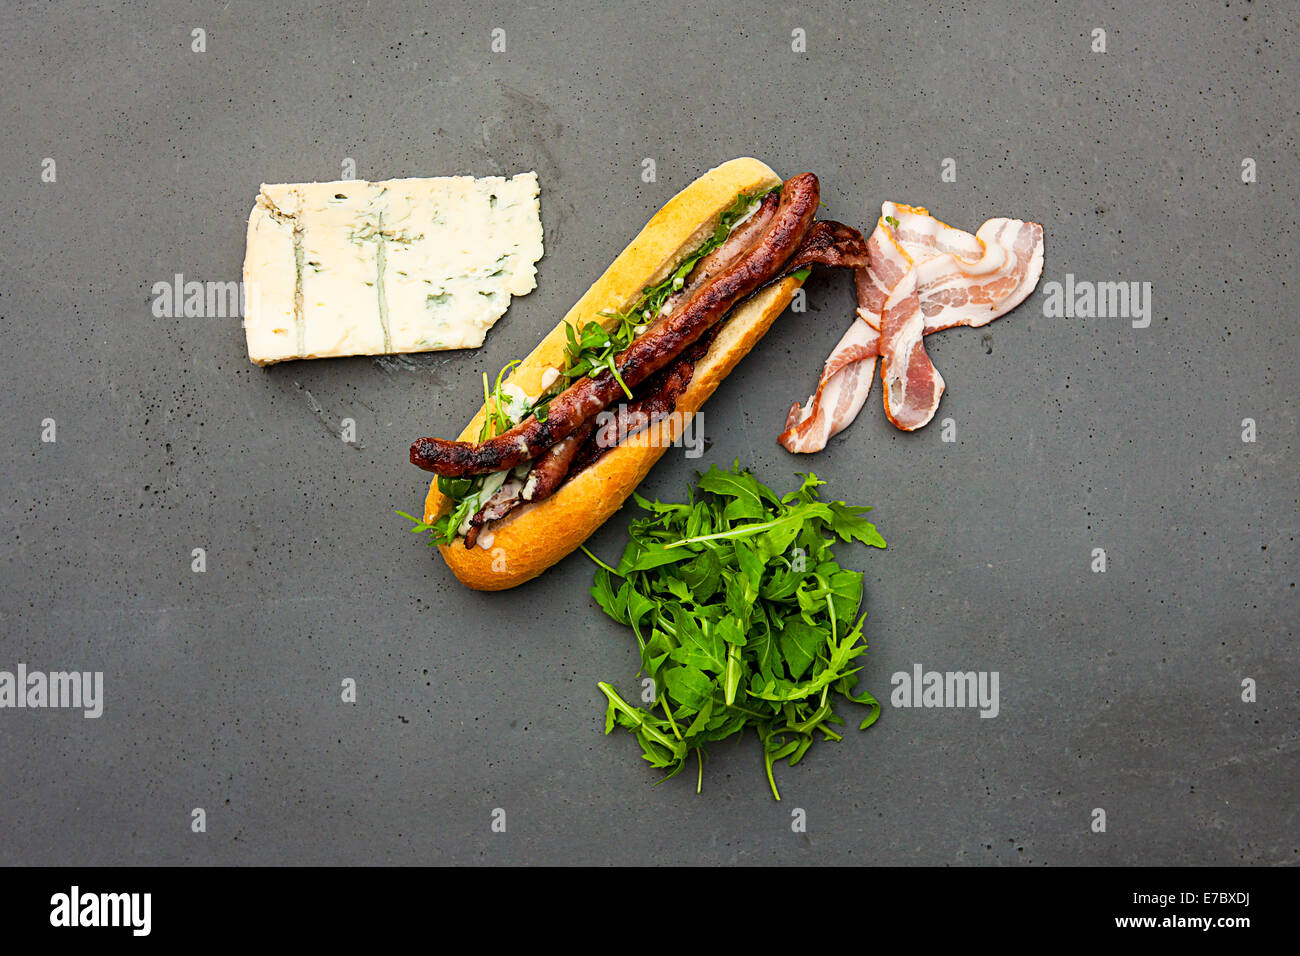 Moderno di hot dog con agnello salsicce, pancetta, rucola, salsa al gorgonzola su cemento tabella Foto Stock